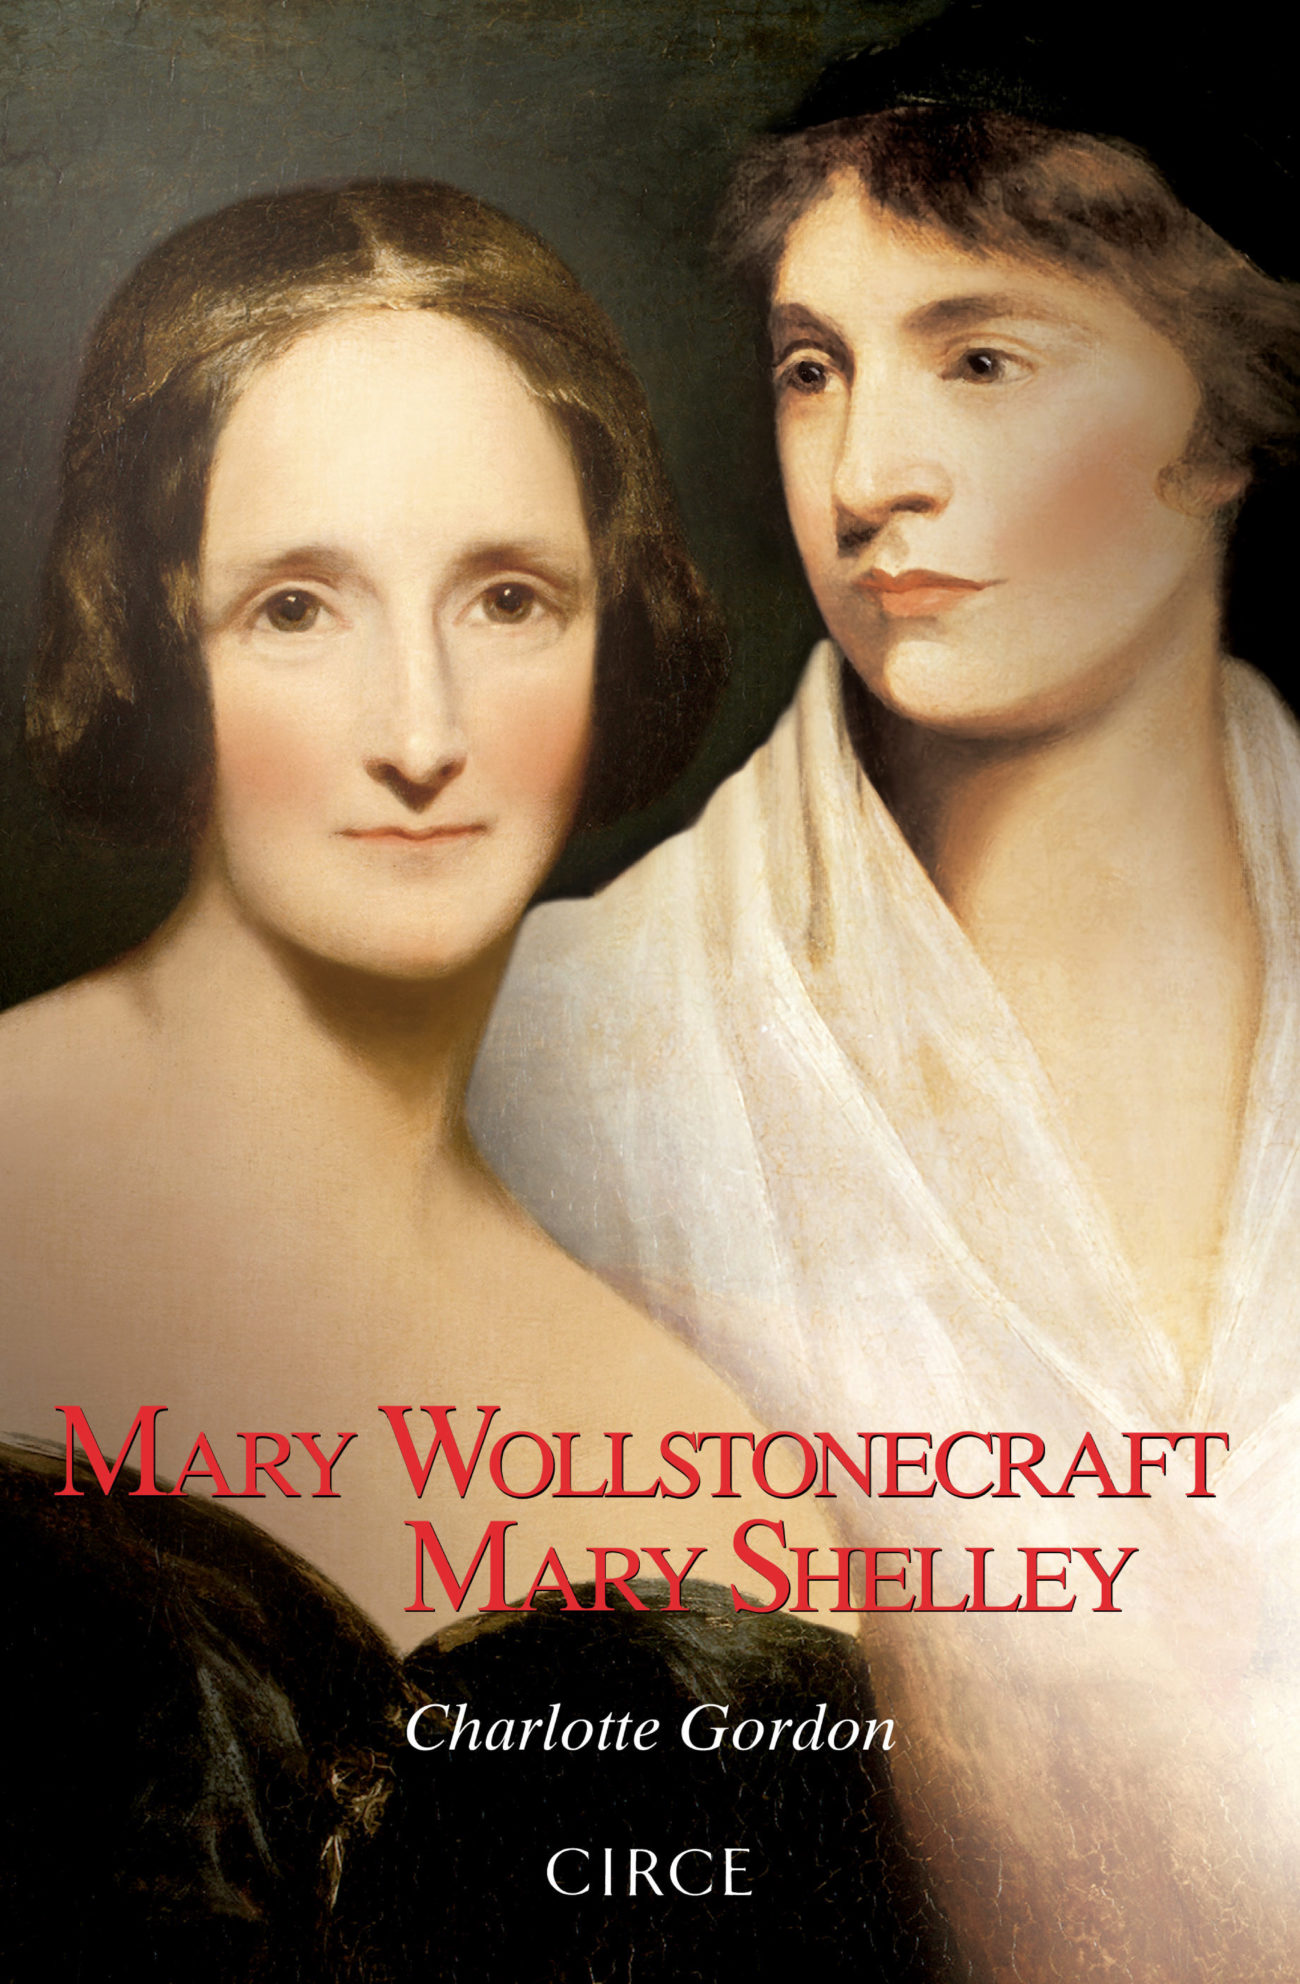 Un libro sobre Mary Shelley, la autora de Frankenstein, y su madre, y...